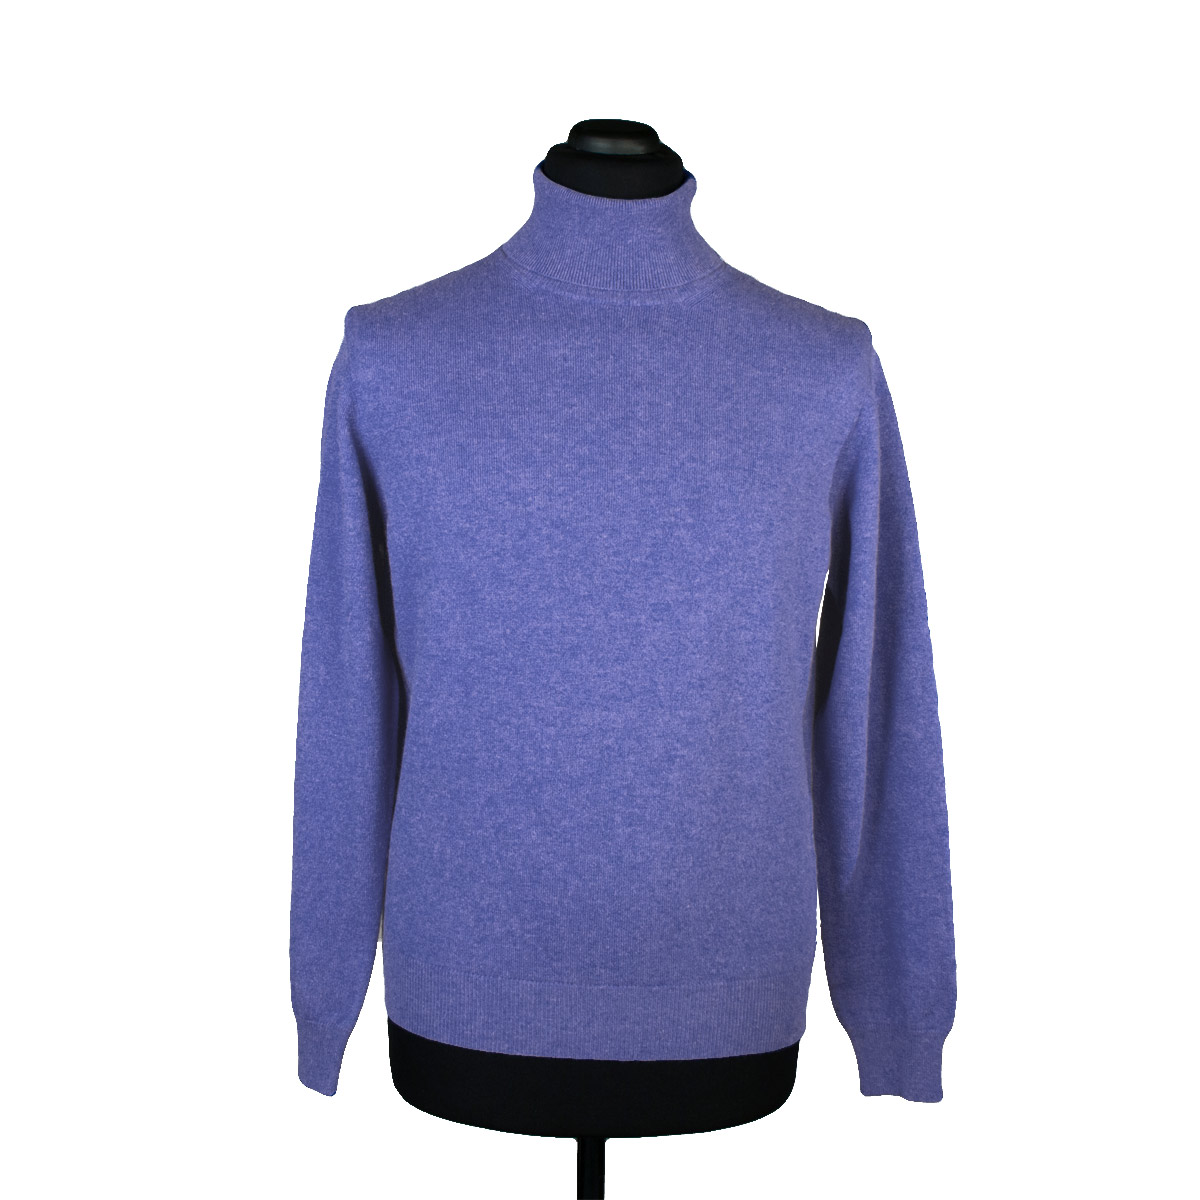 Cashmere turtleneck sweater for men, lavender blue - Di Franco Moda ...